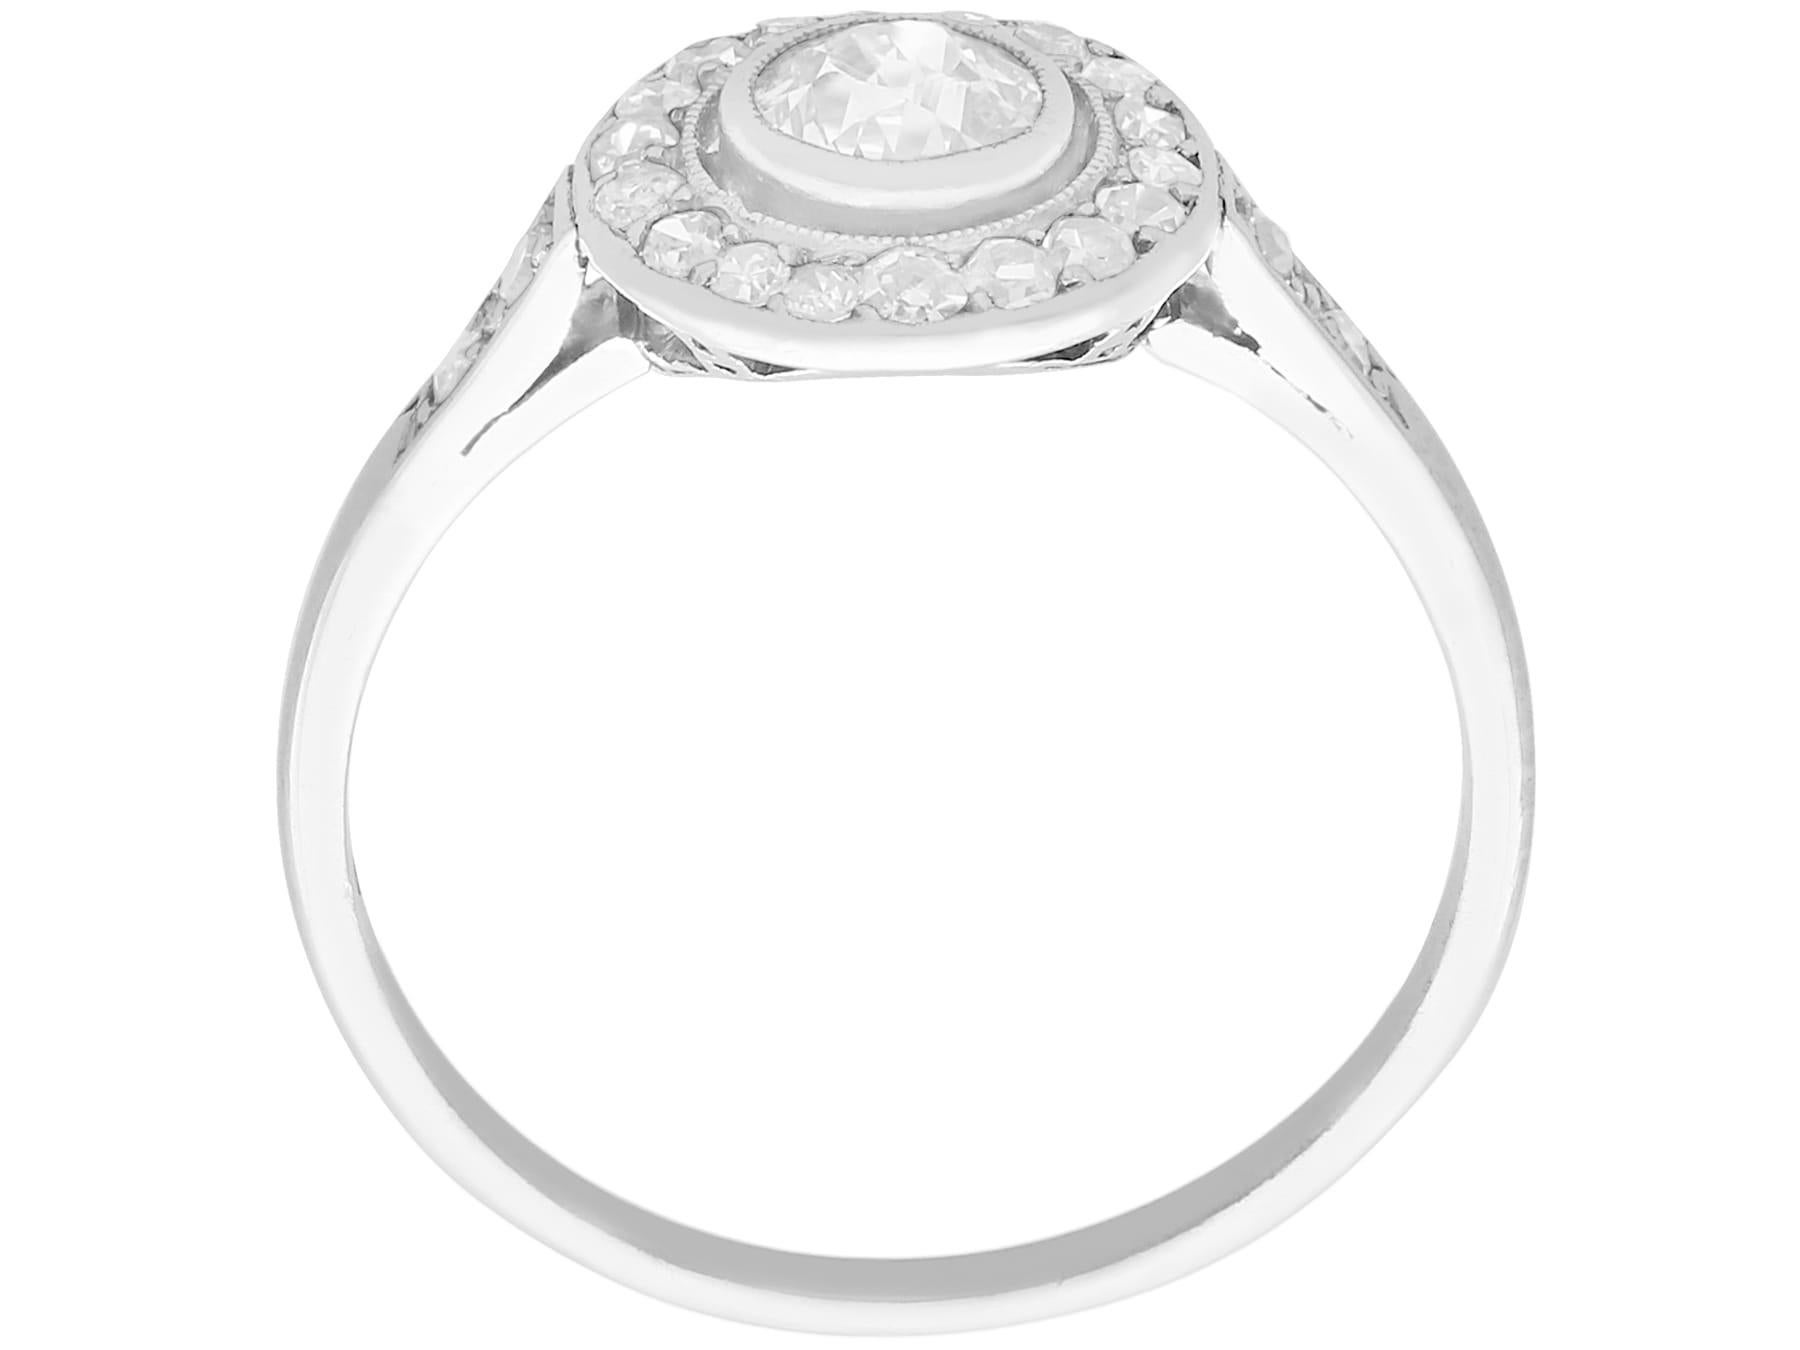 Women's or Men's Antique Diamond and Platinum Cluster Ring, Circa 1925